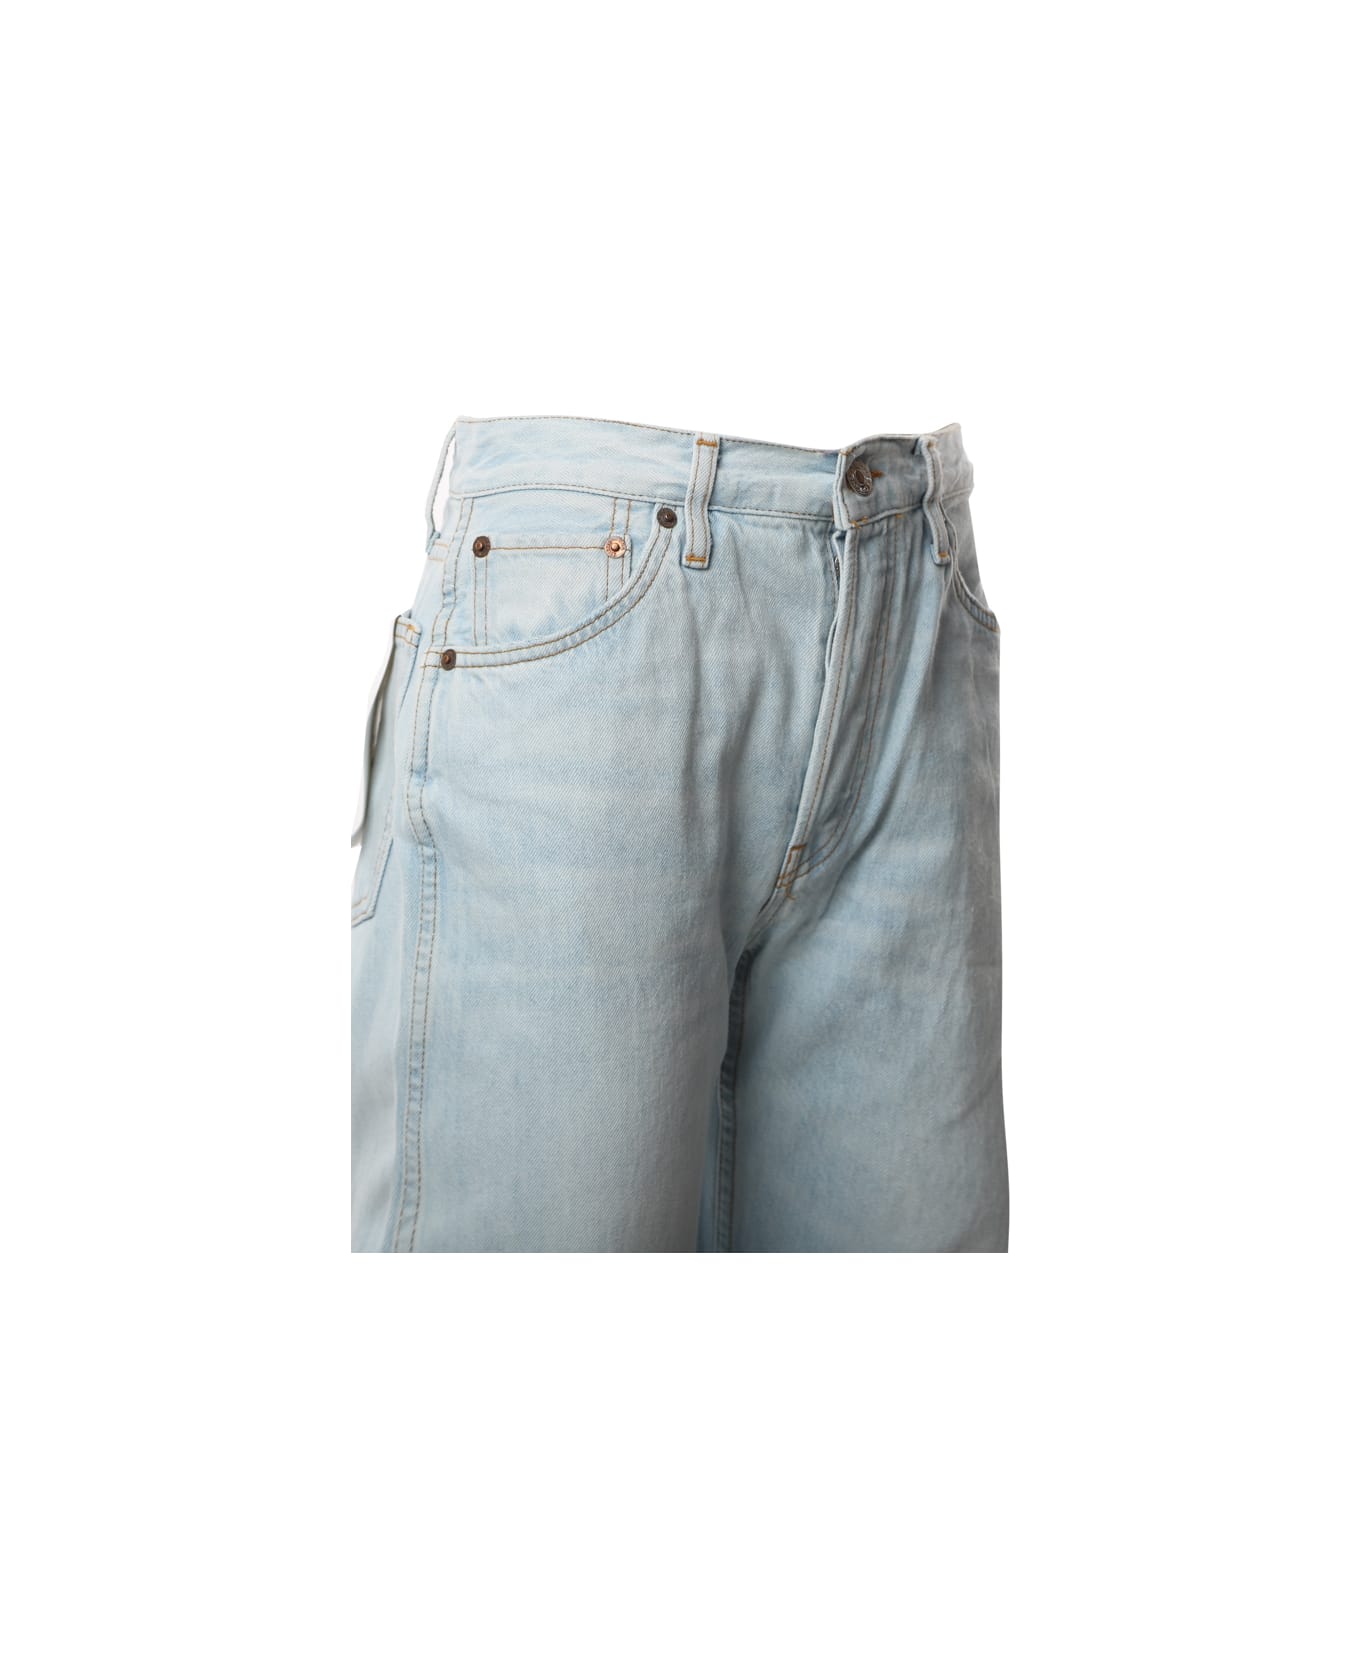 RE/DONE Regular Fit Jeans - Light blue デニム